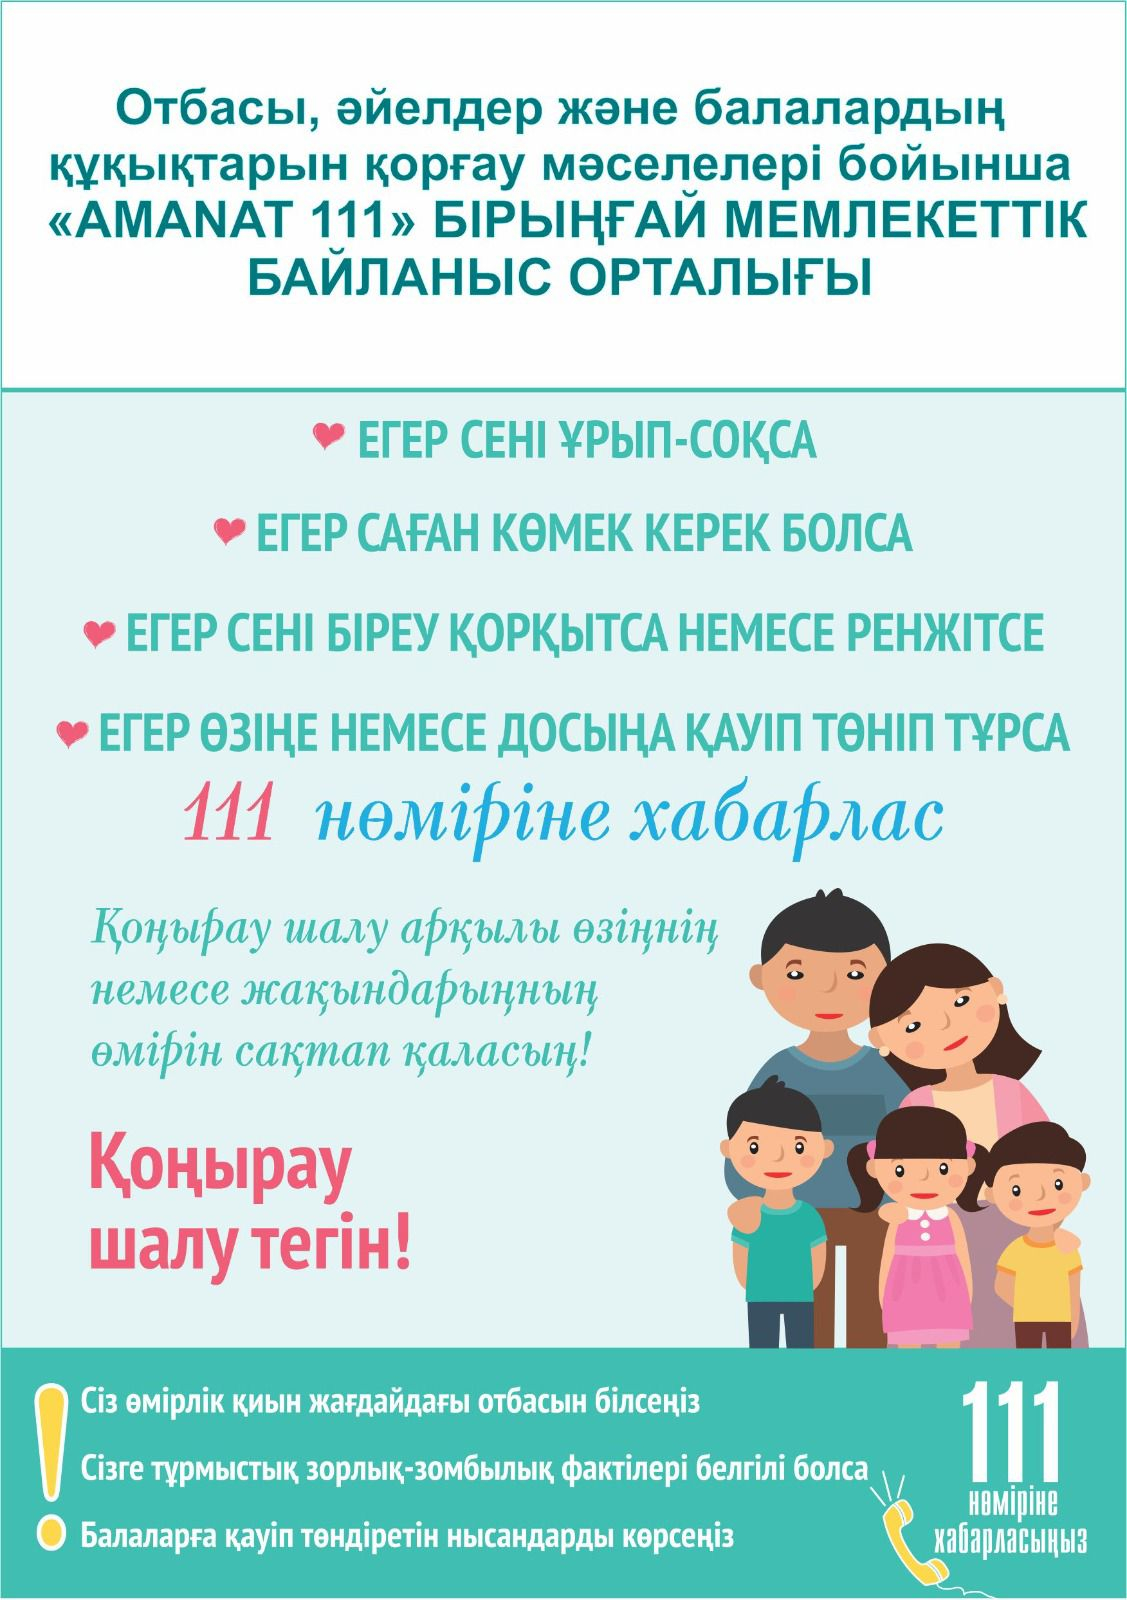 ЕГК-Центр по вопросам семьи, женщин и защиты прав детей